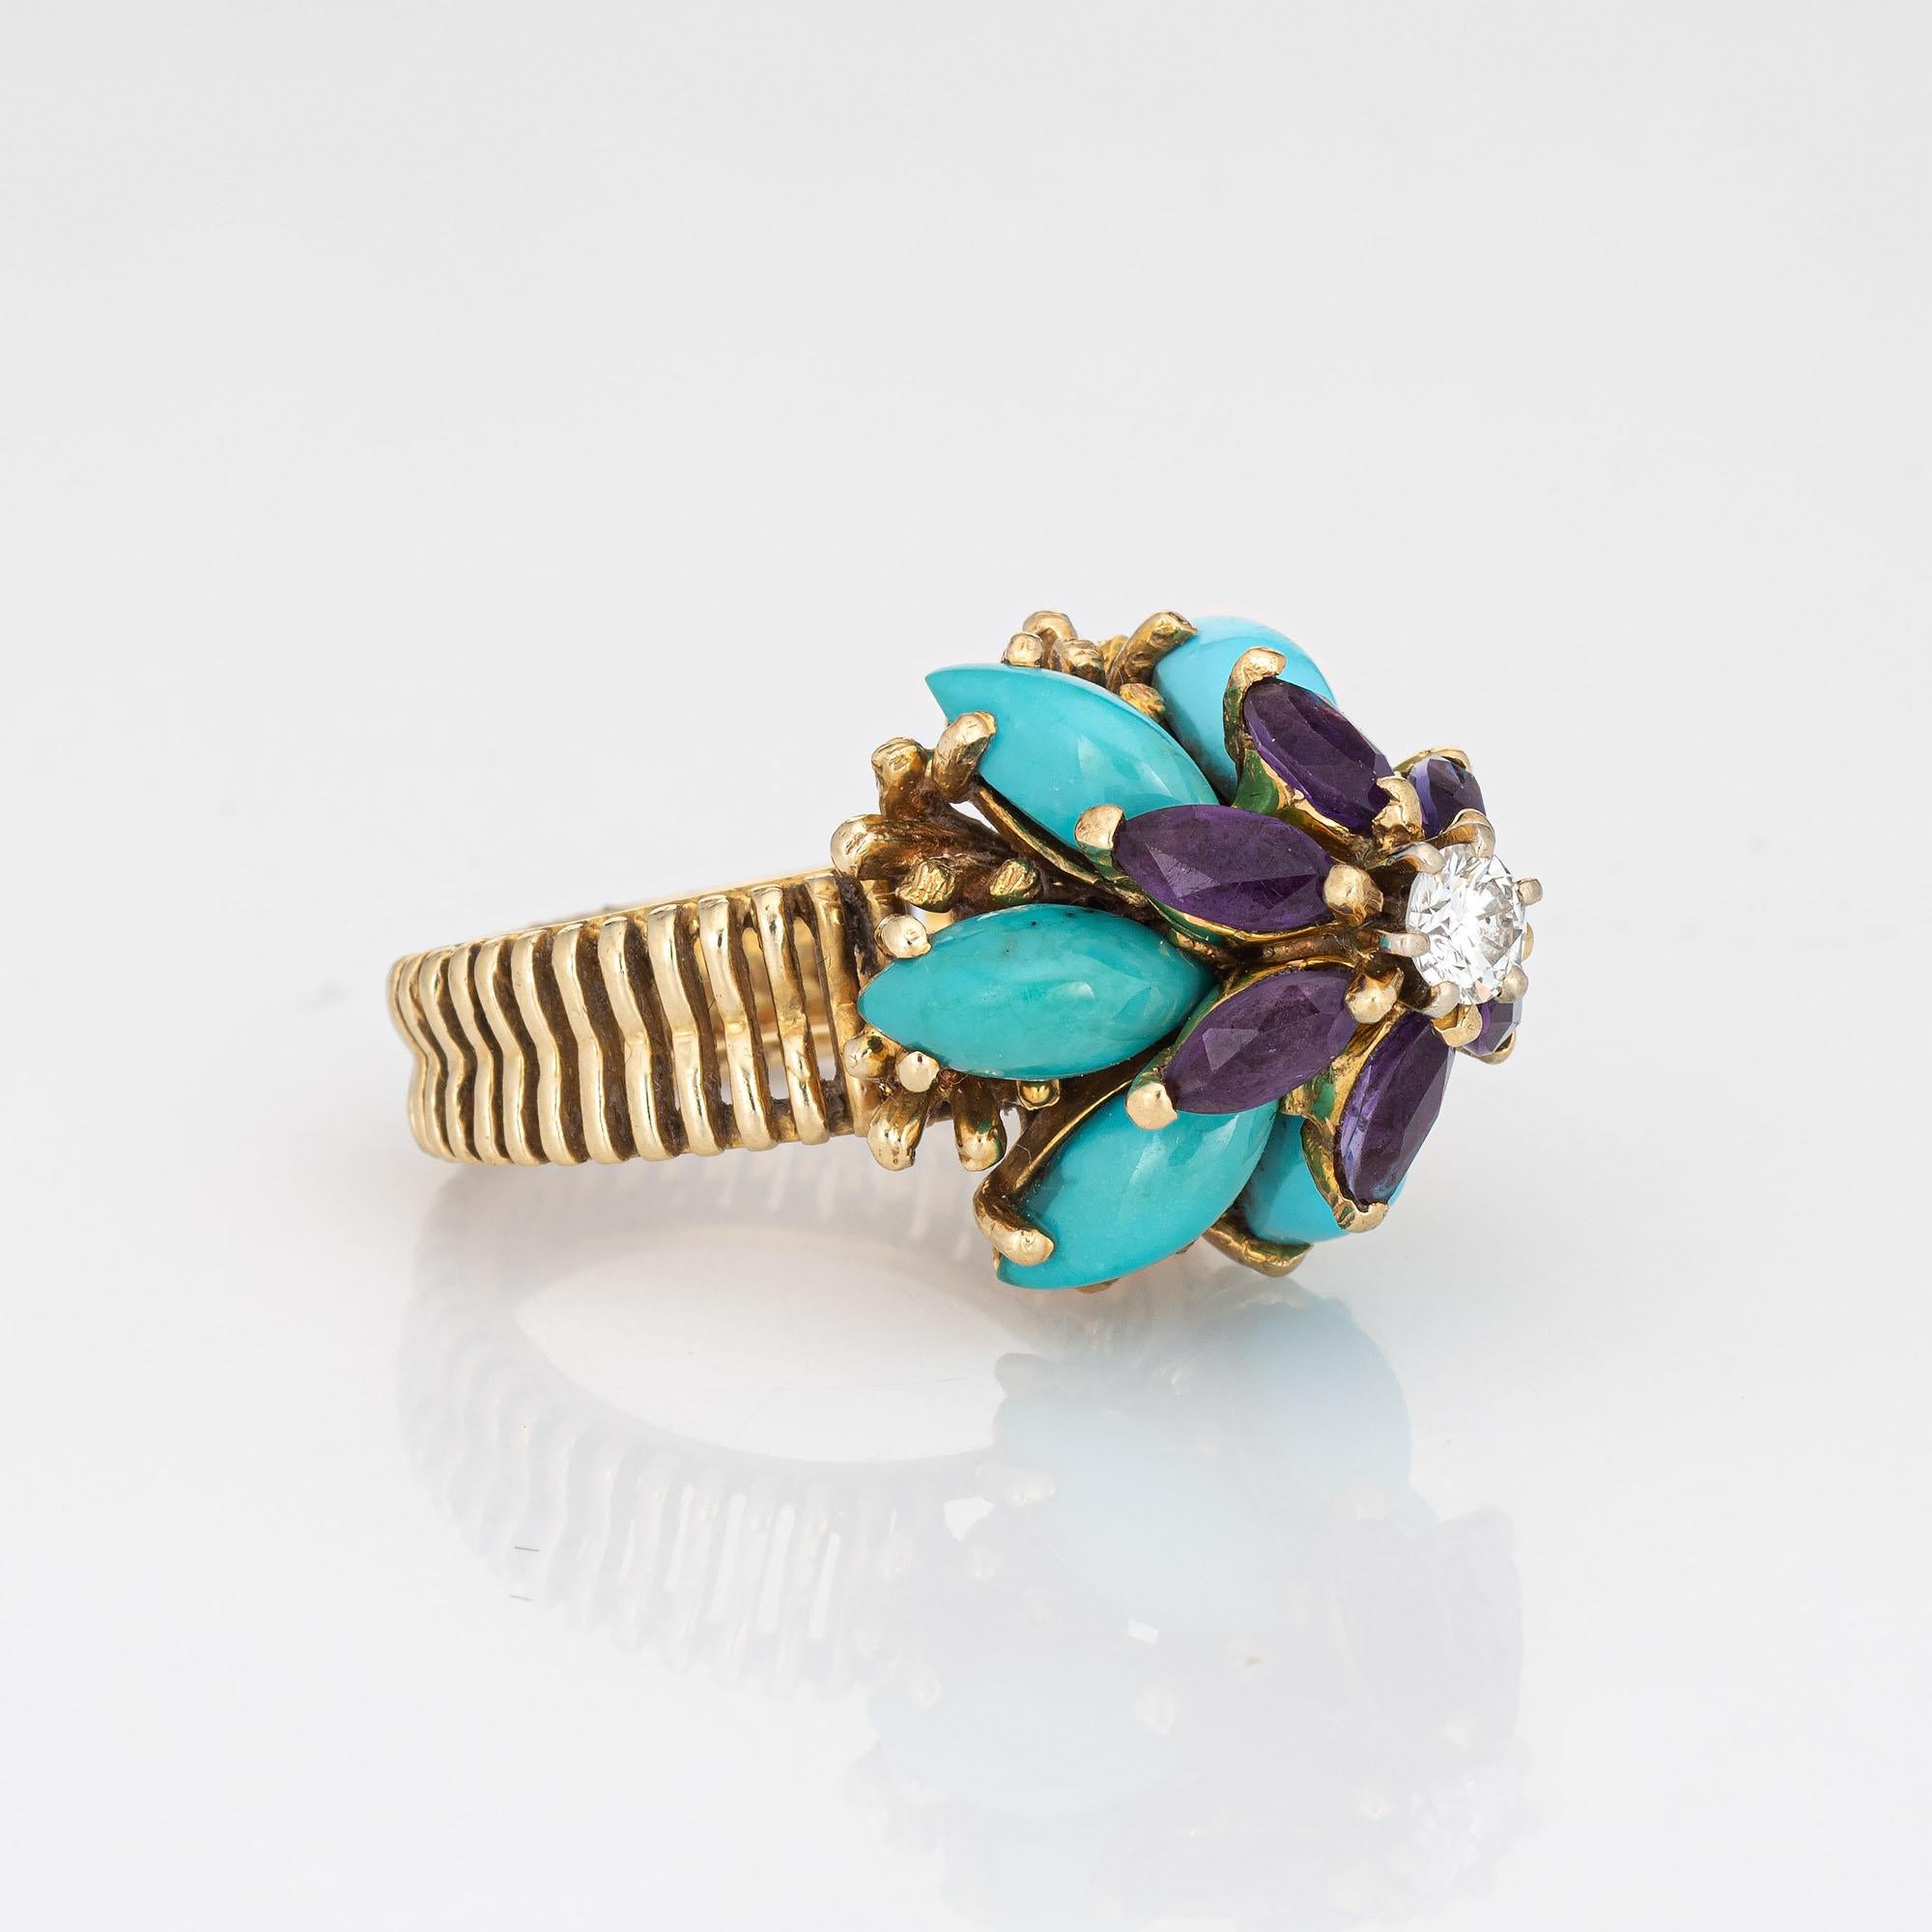 60s jewelry